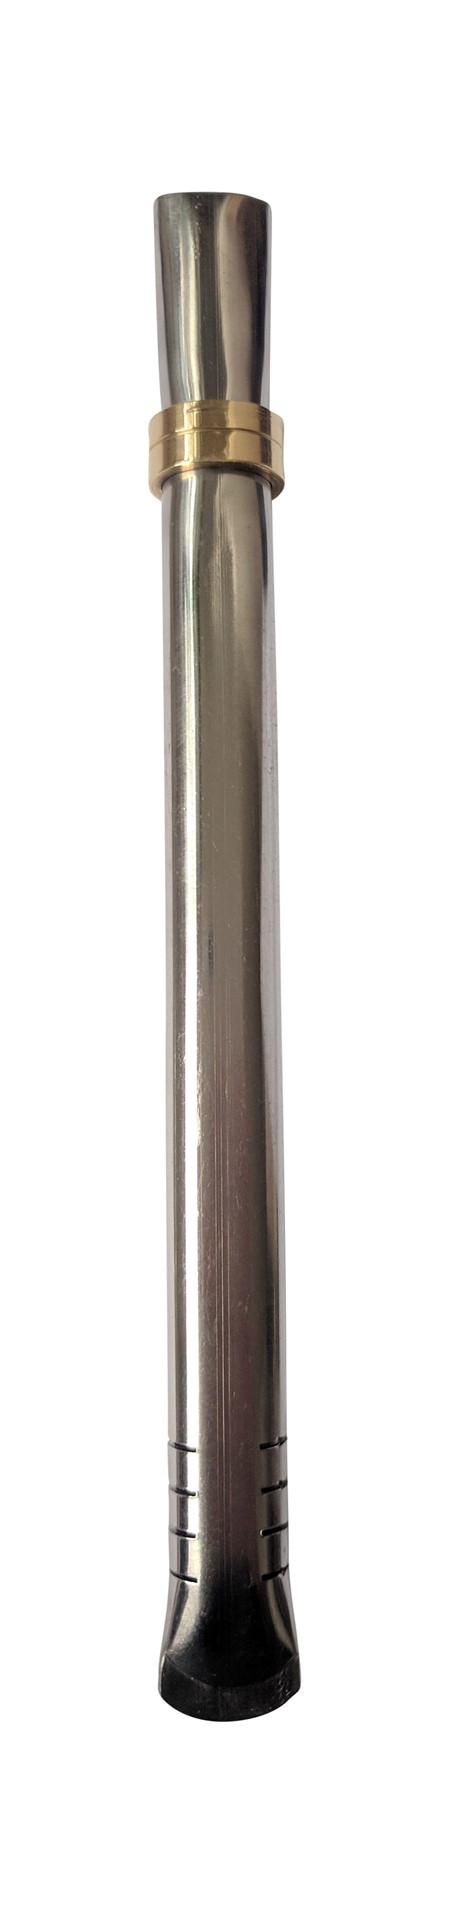 Bombilla - flatpipe -  16cm